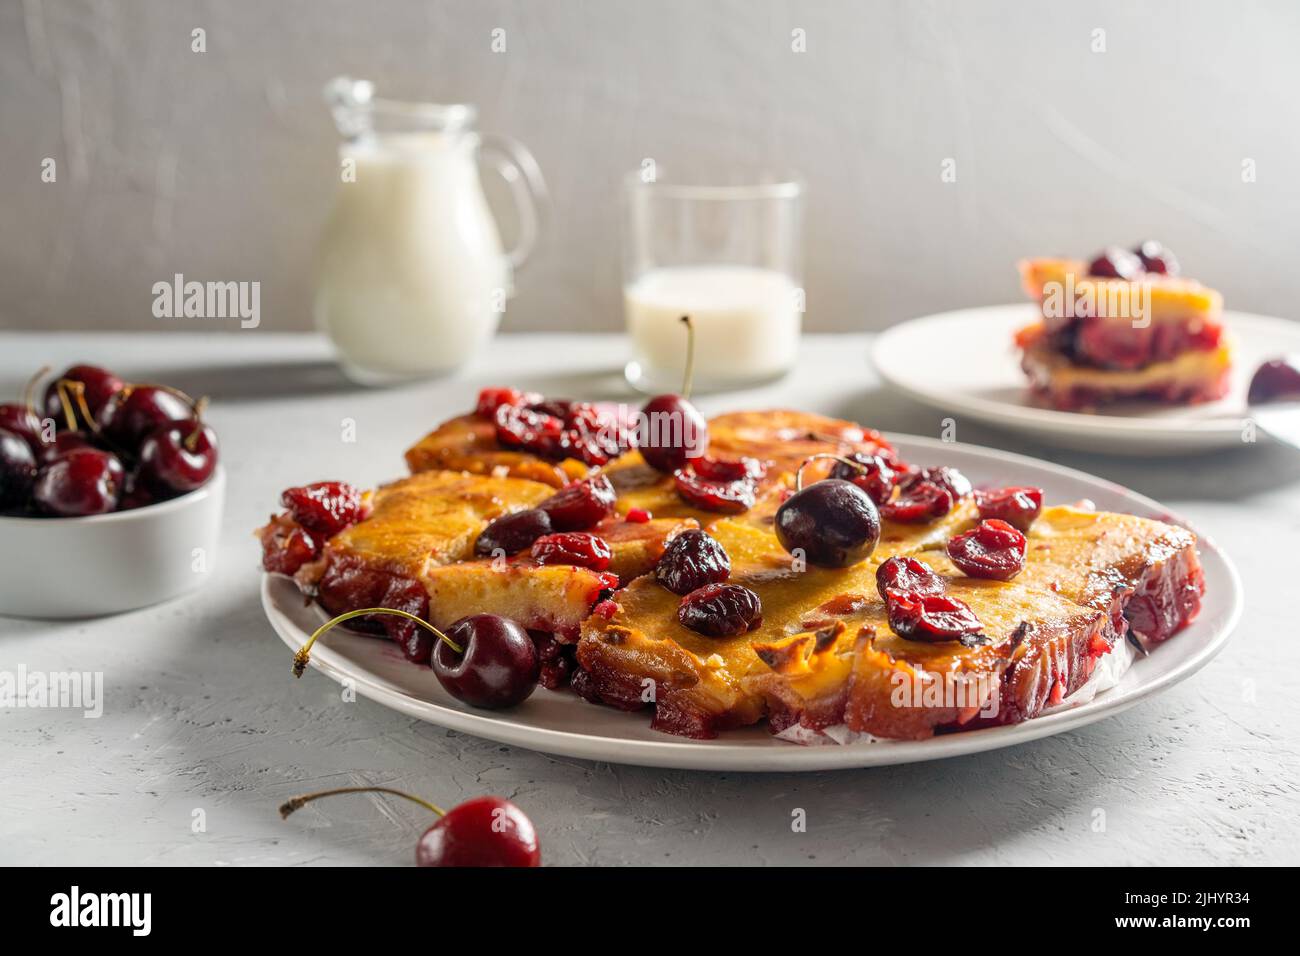 Frisch gebackene süße Kirschkuchen oder roter Brownie-Kuchen auf dem Teller. Rohe Beeren, ein Stück Kuchen und Milch im Bild Stockfoto